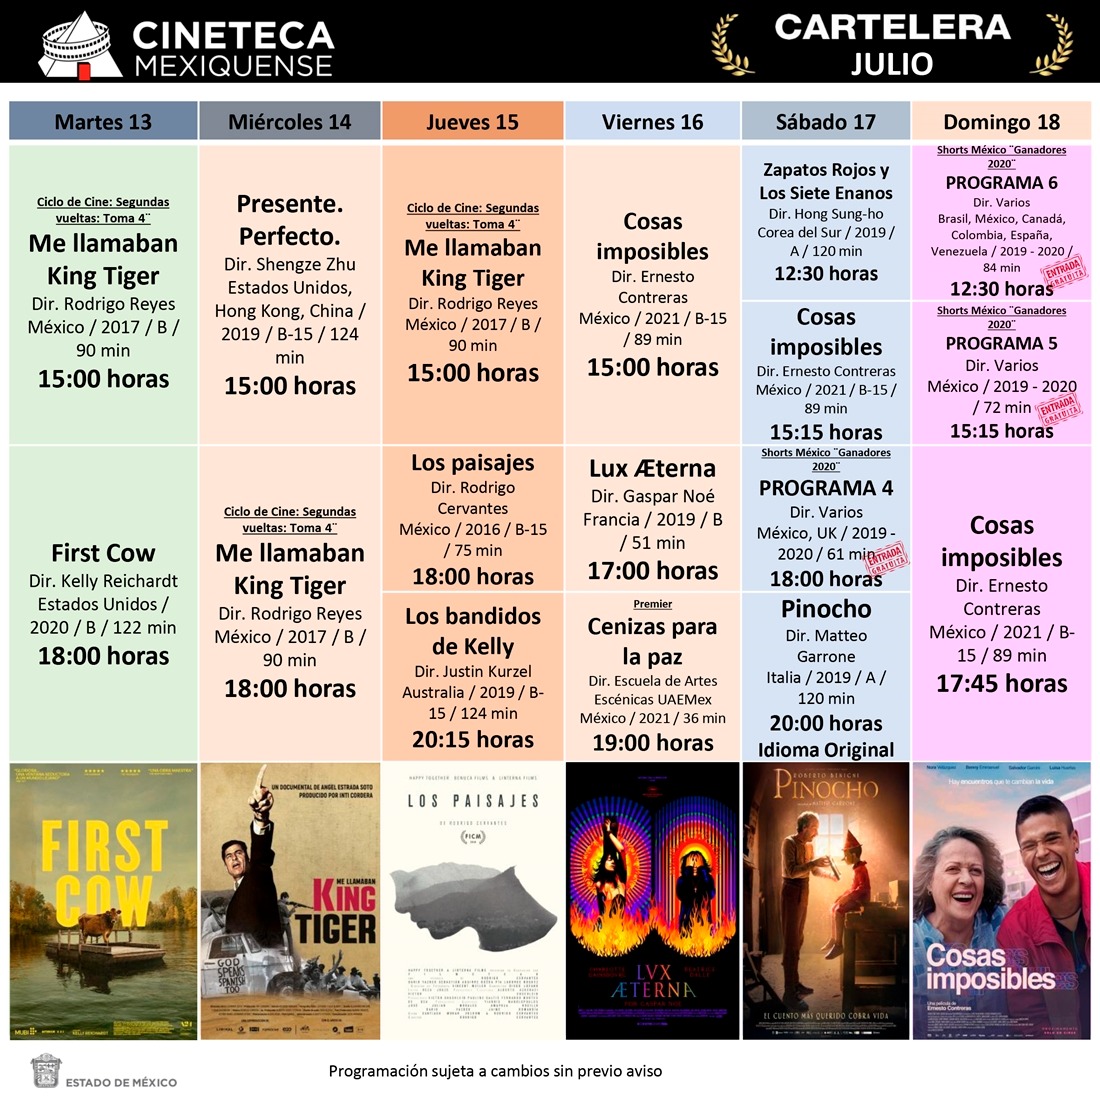 Invita cineteca mexiquense a disfrutar en vacaciones interesantes propuestas fílmicas